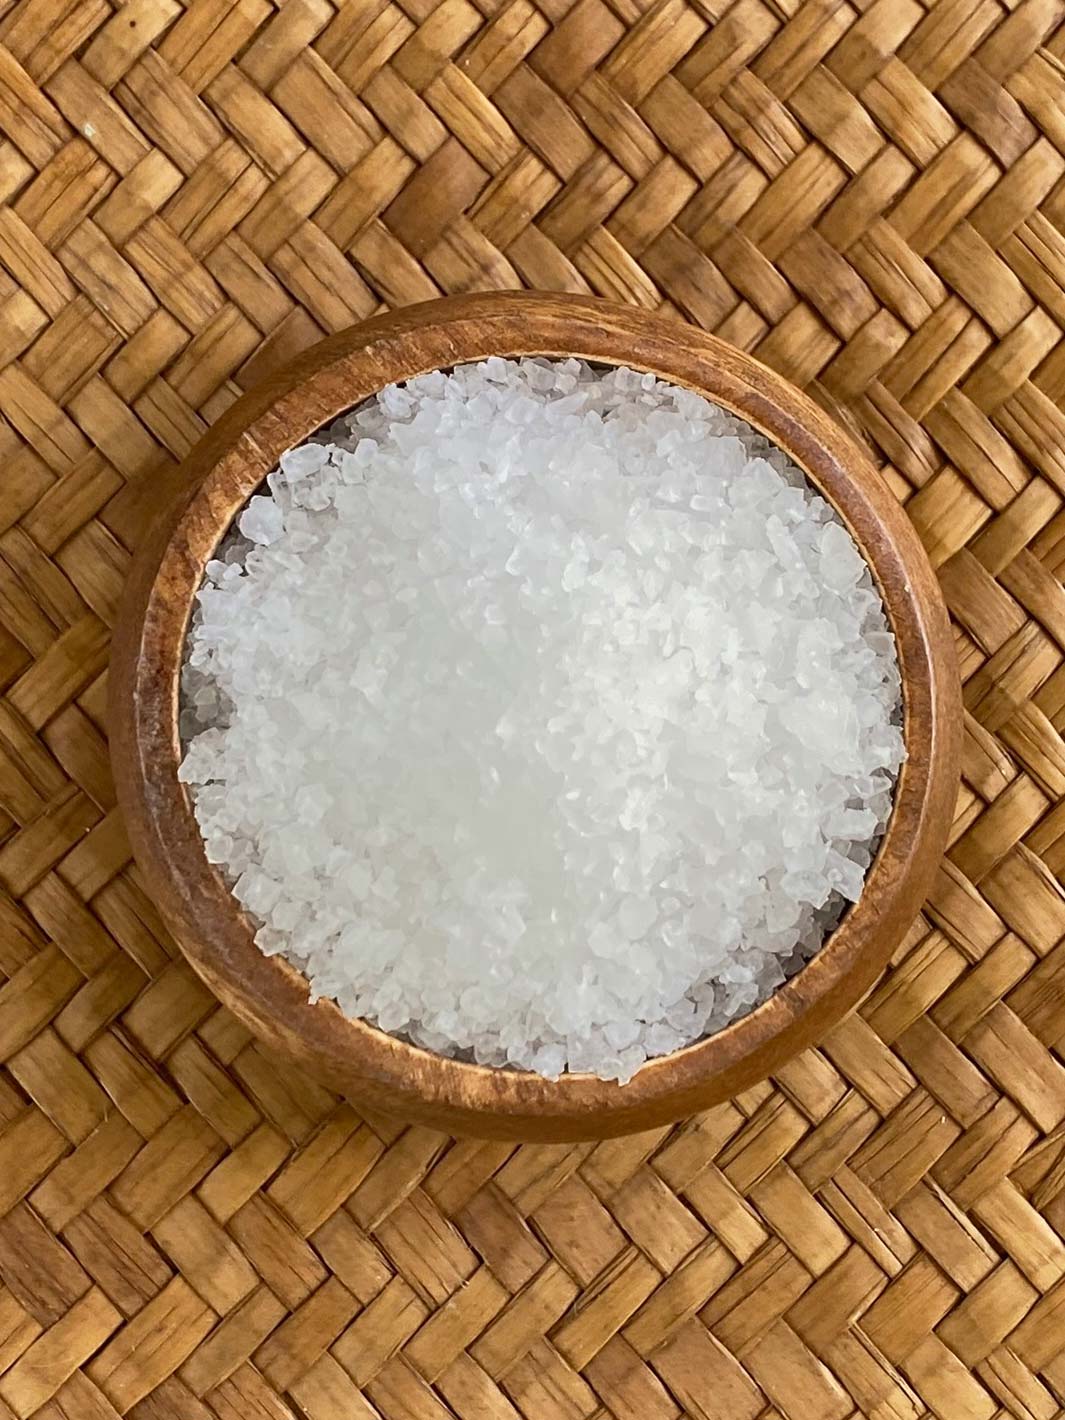 Pure Kona Deep Sea Salt - Medium Grind